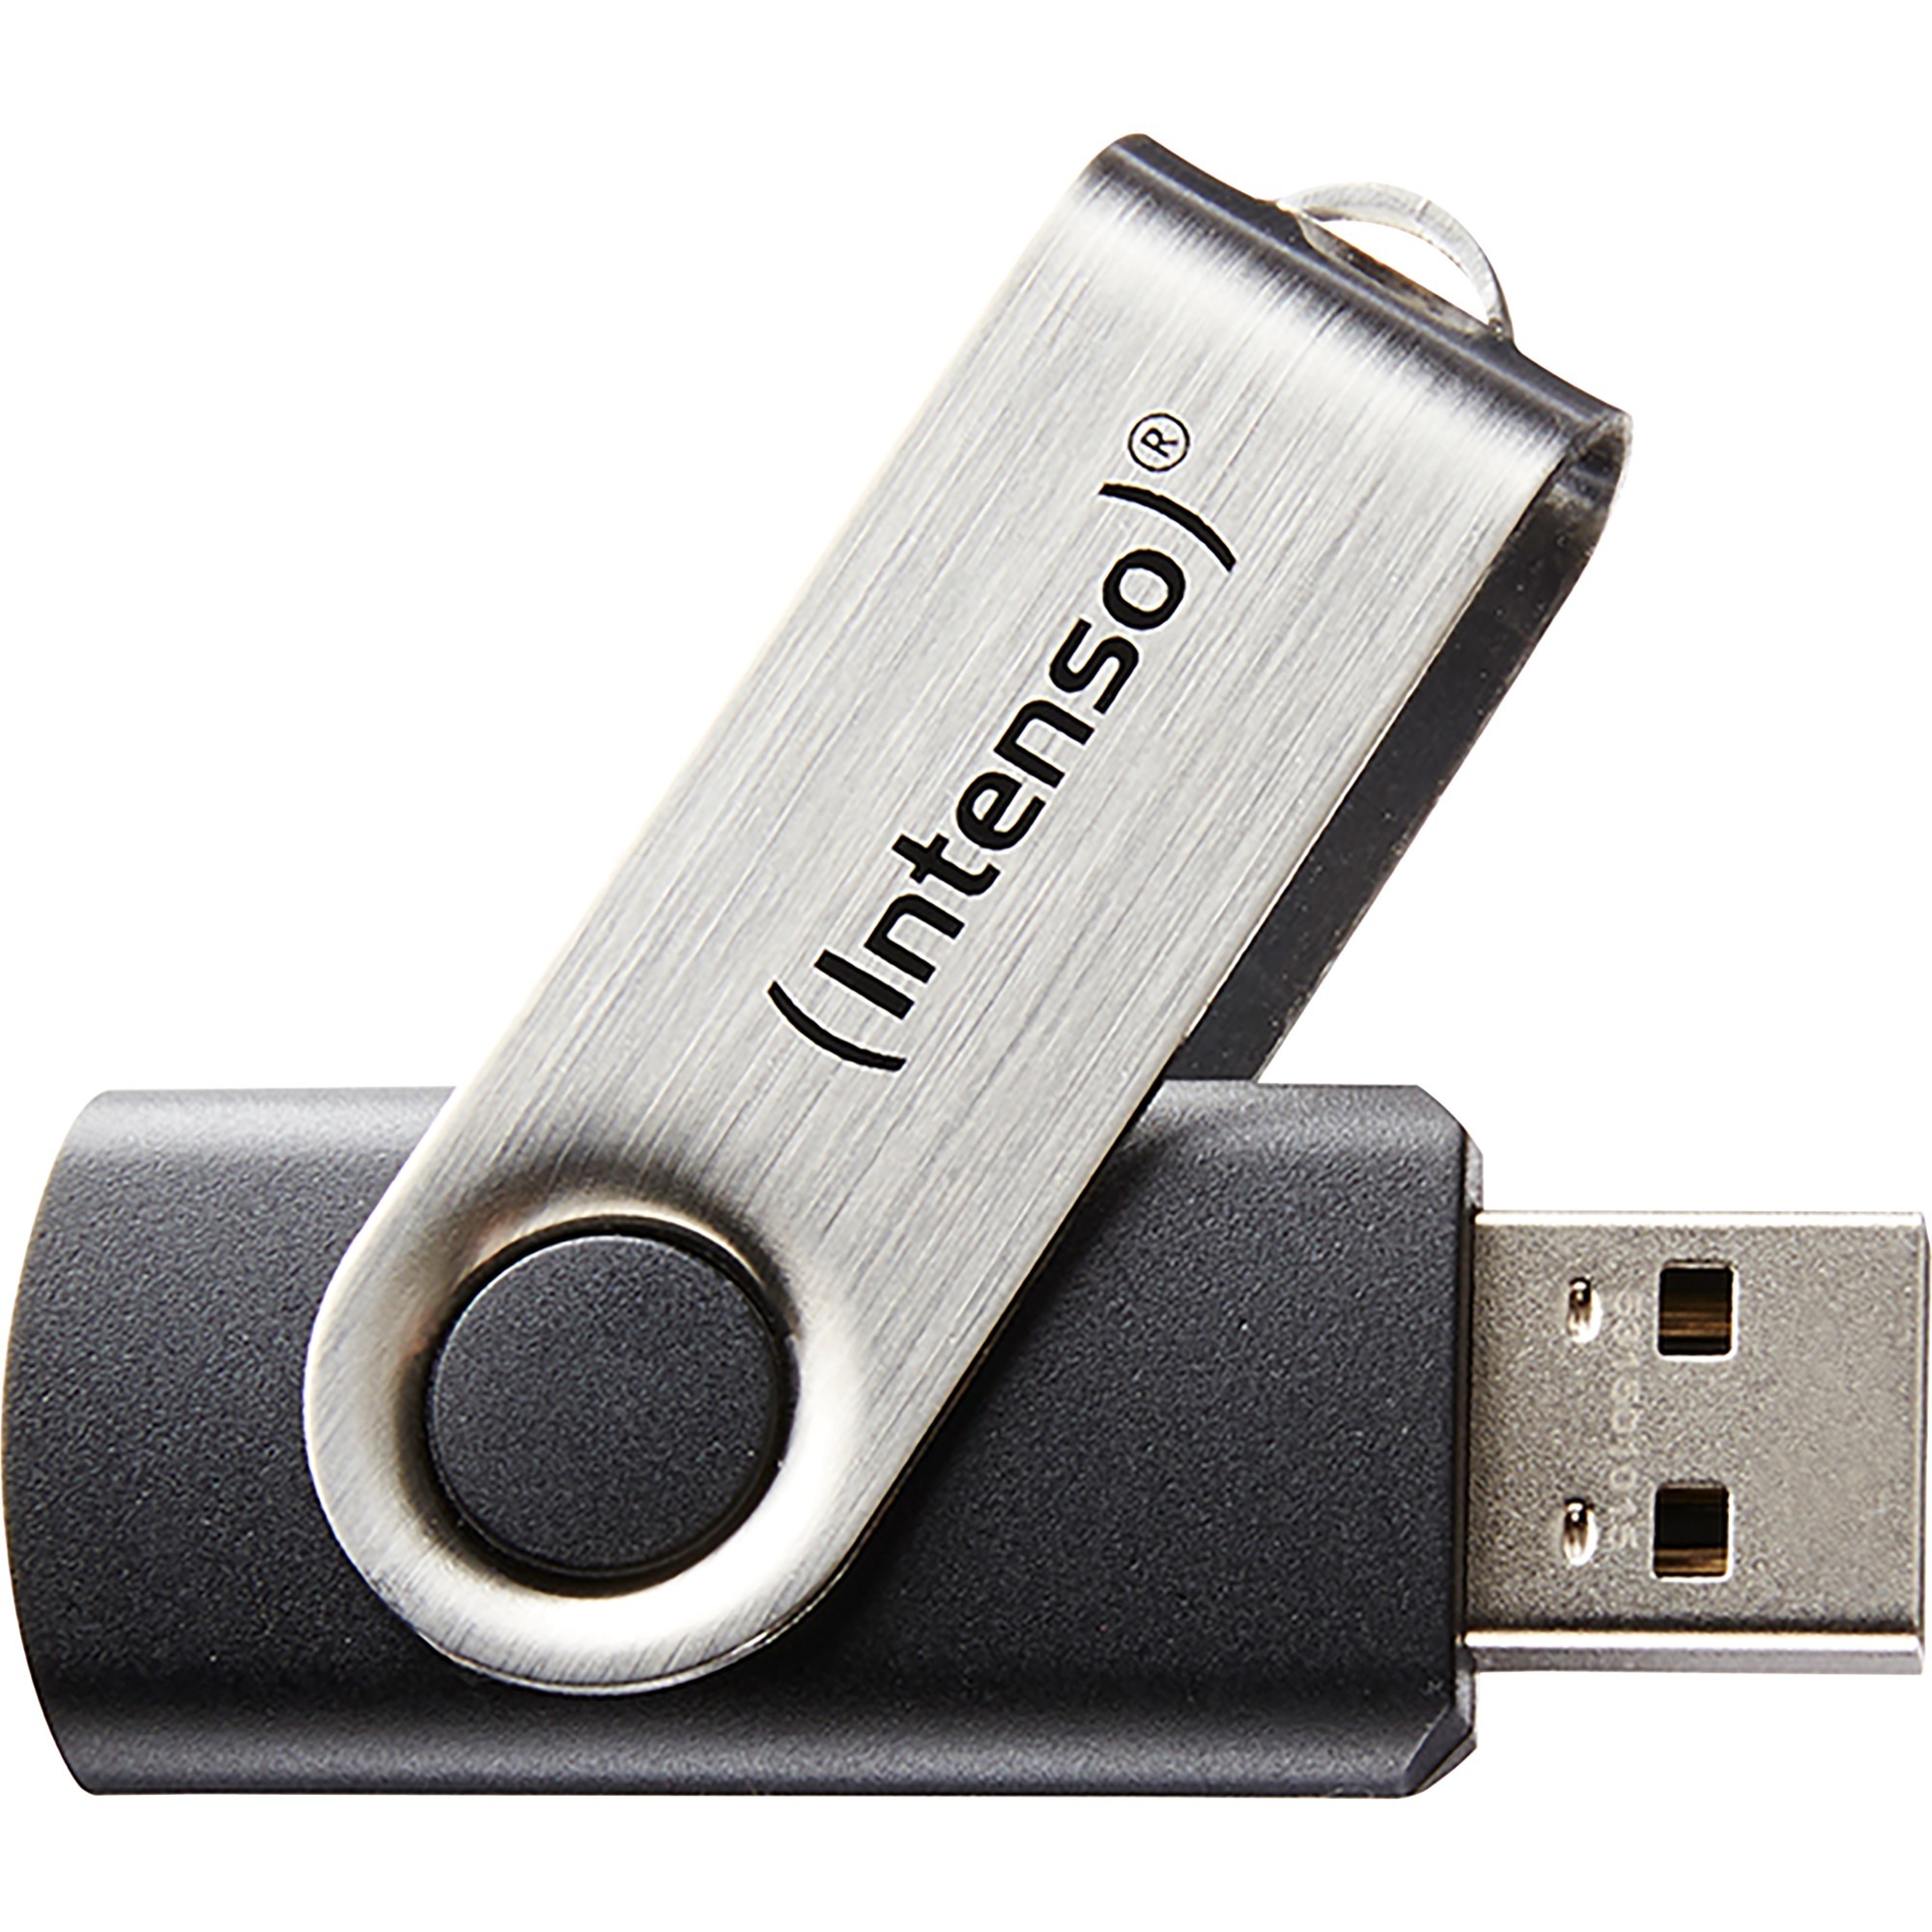 Image of Alternate - Basic Line 64 GB, USB-Stick online einkaufen bei Alternate